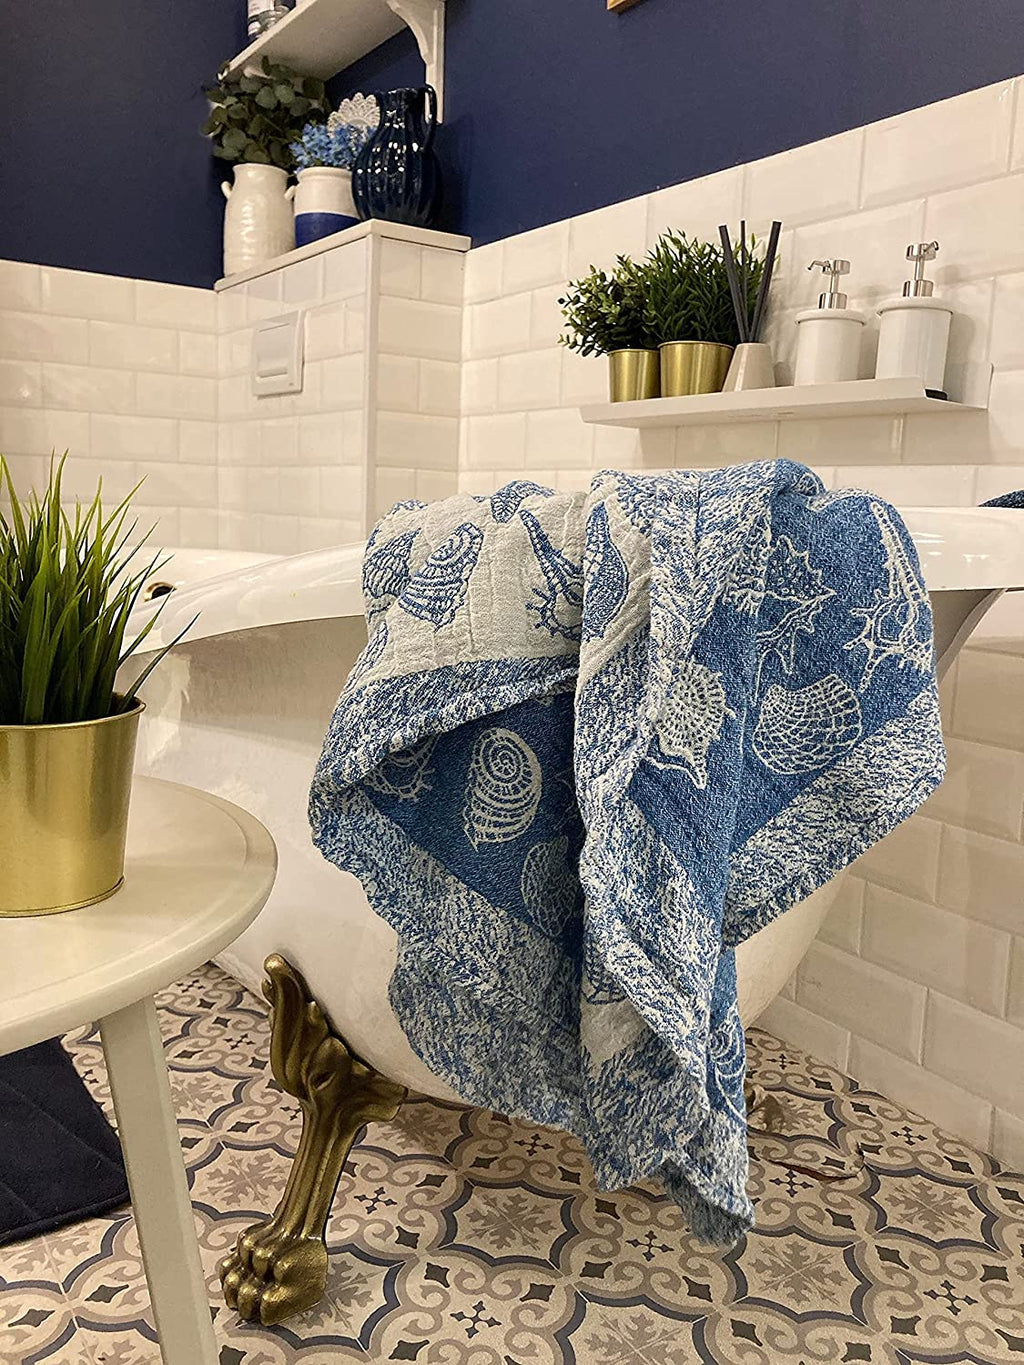 100% Pure Flax Linen Bath Towel 25x 52